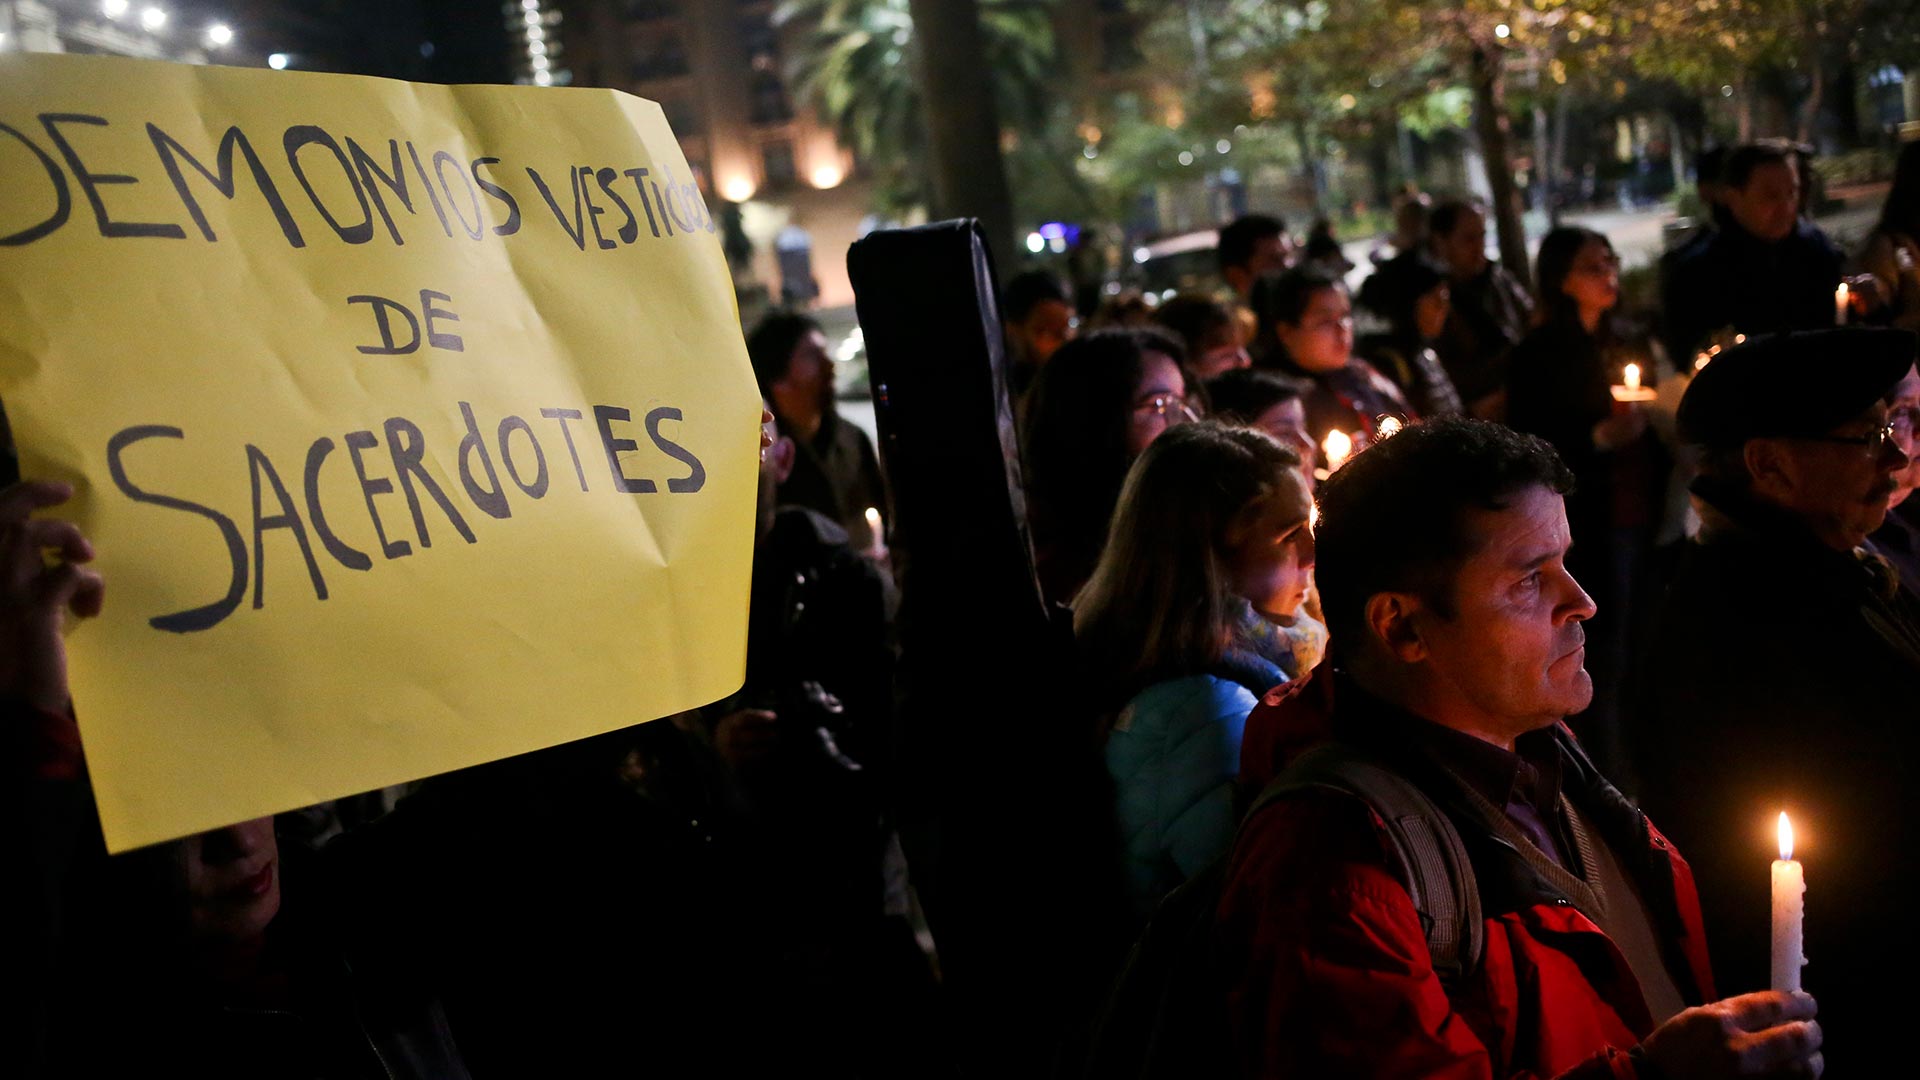 La Iglesia chilena restituye a dos curas suspendidos por supuestos abusos